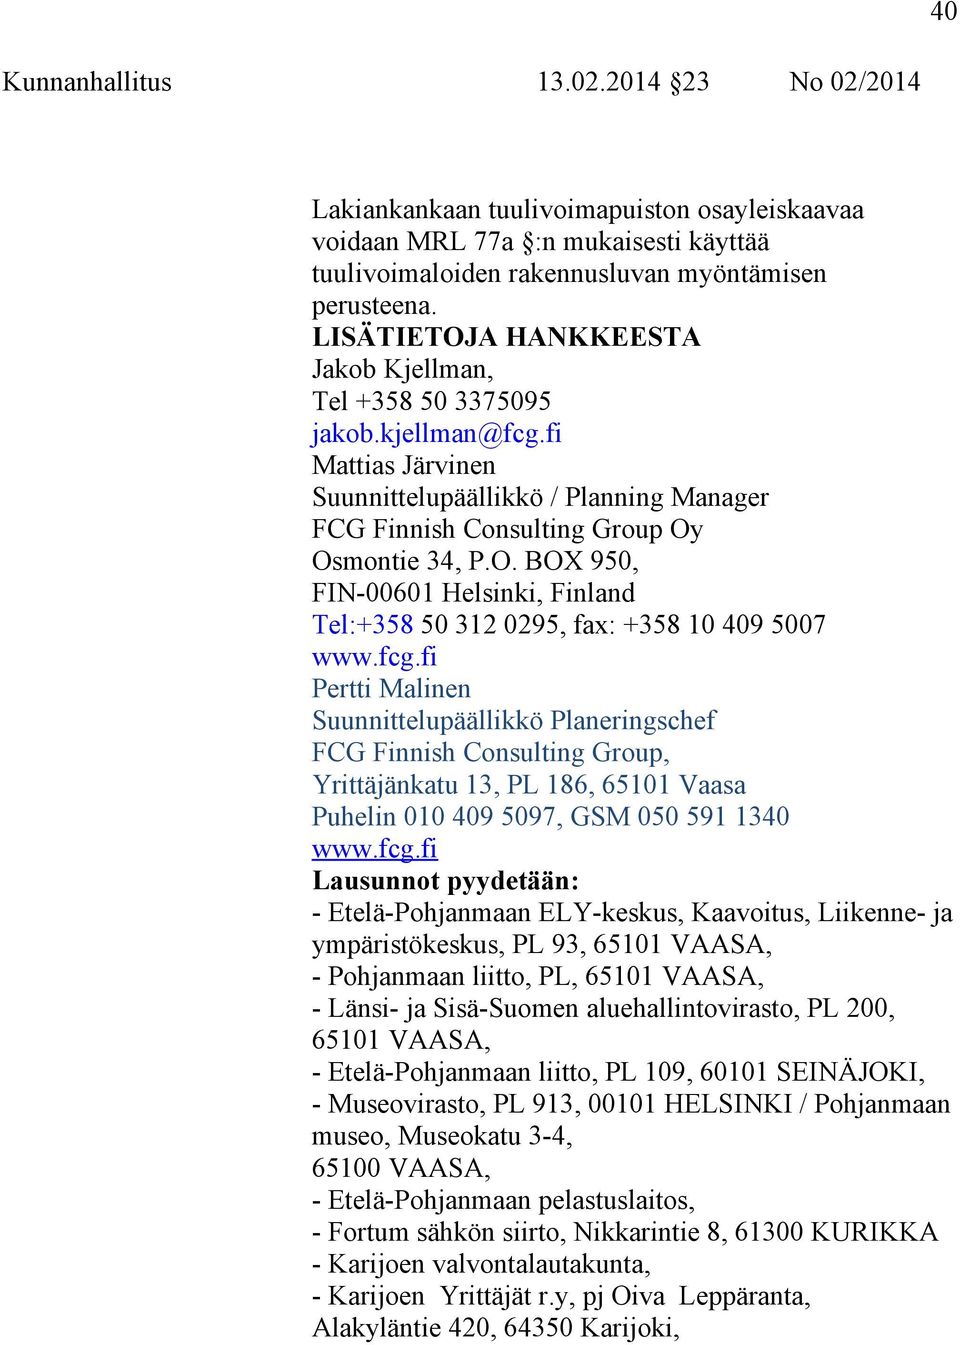 fcg.fi Pertti Malinen Suunnittelupäällikkö Planeringschef FCG Finnish Consulting Group, Yrittäjänkatu 13, PL 186, 65101 Vaasa Puhelin 010 409 5097, GSM 050 591 1340 www.fcg.fi Lausunnot pyydetään: -